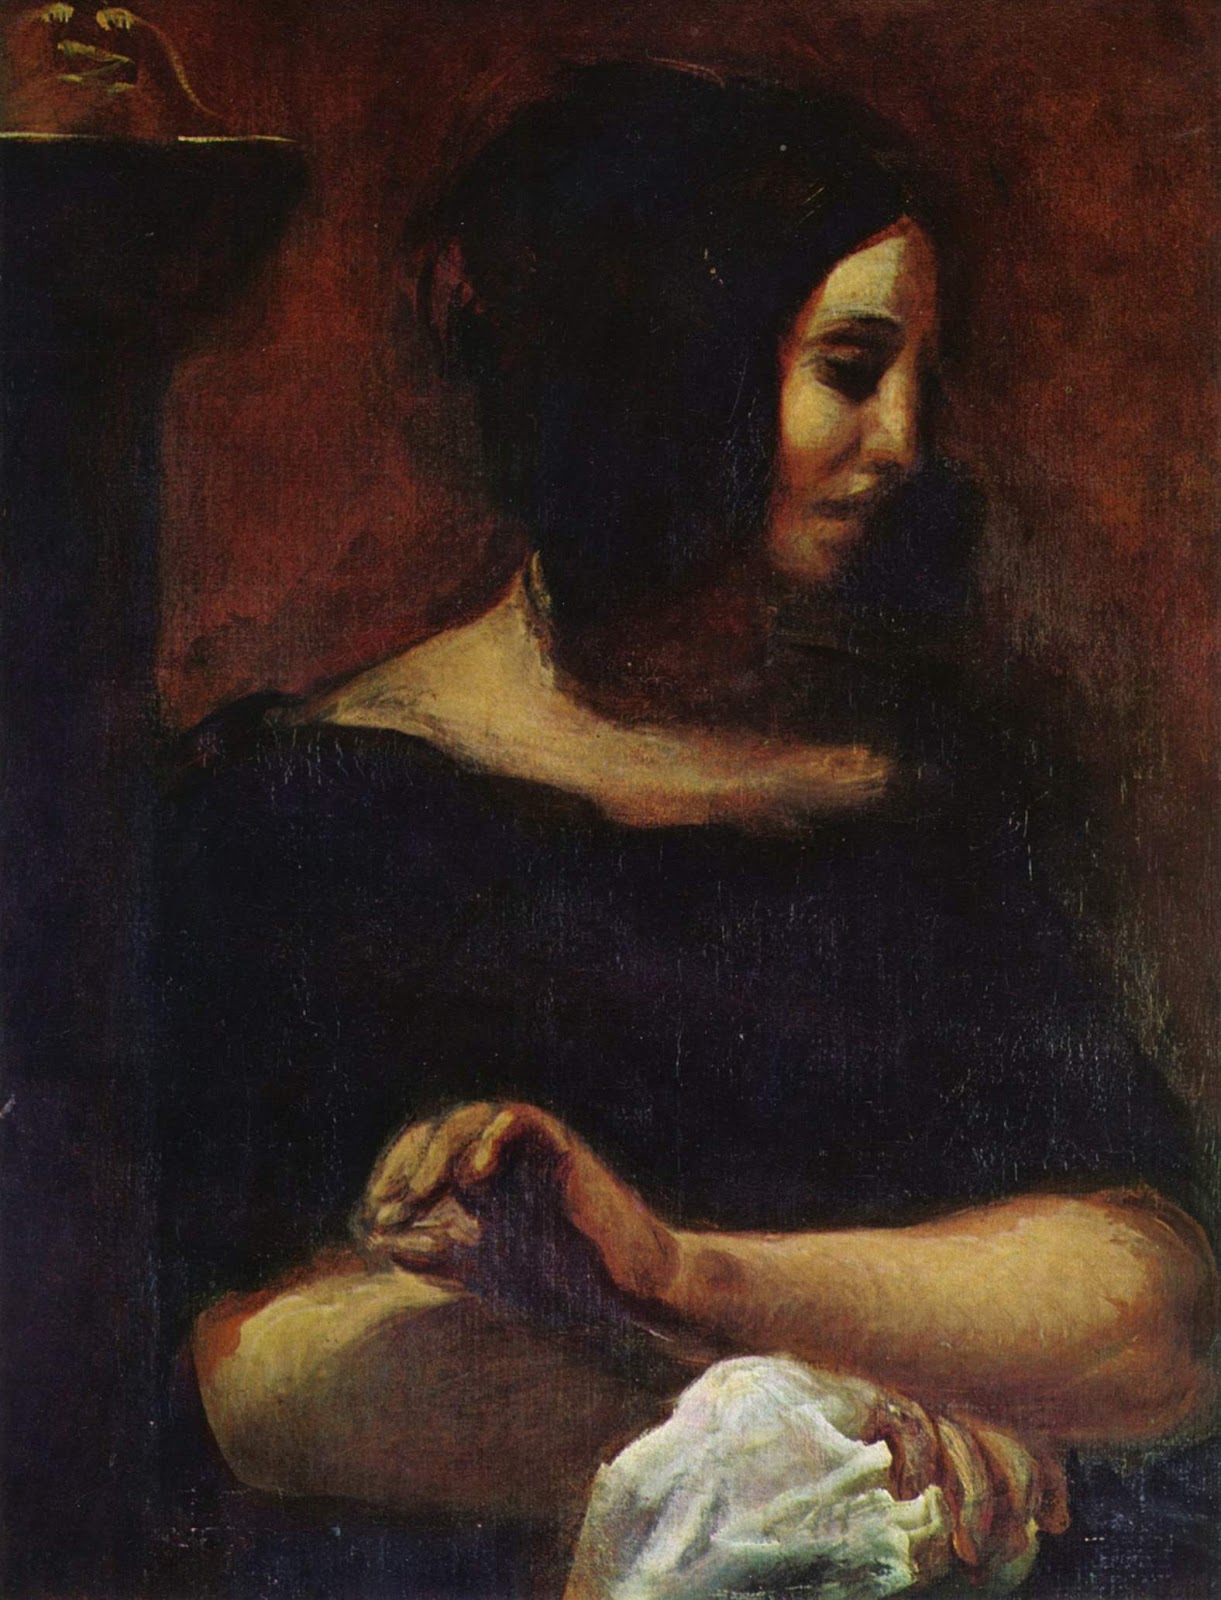 Eugene+Delacroix-1798-1863 (191).jpg